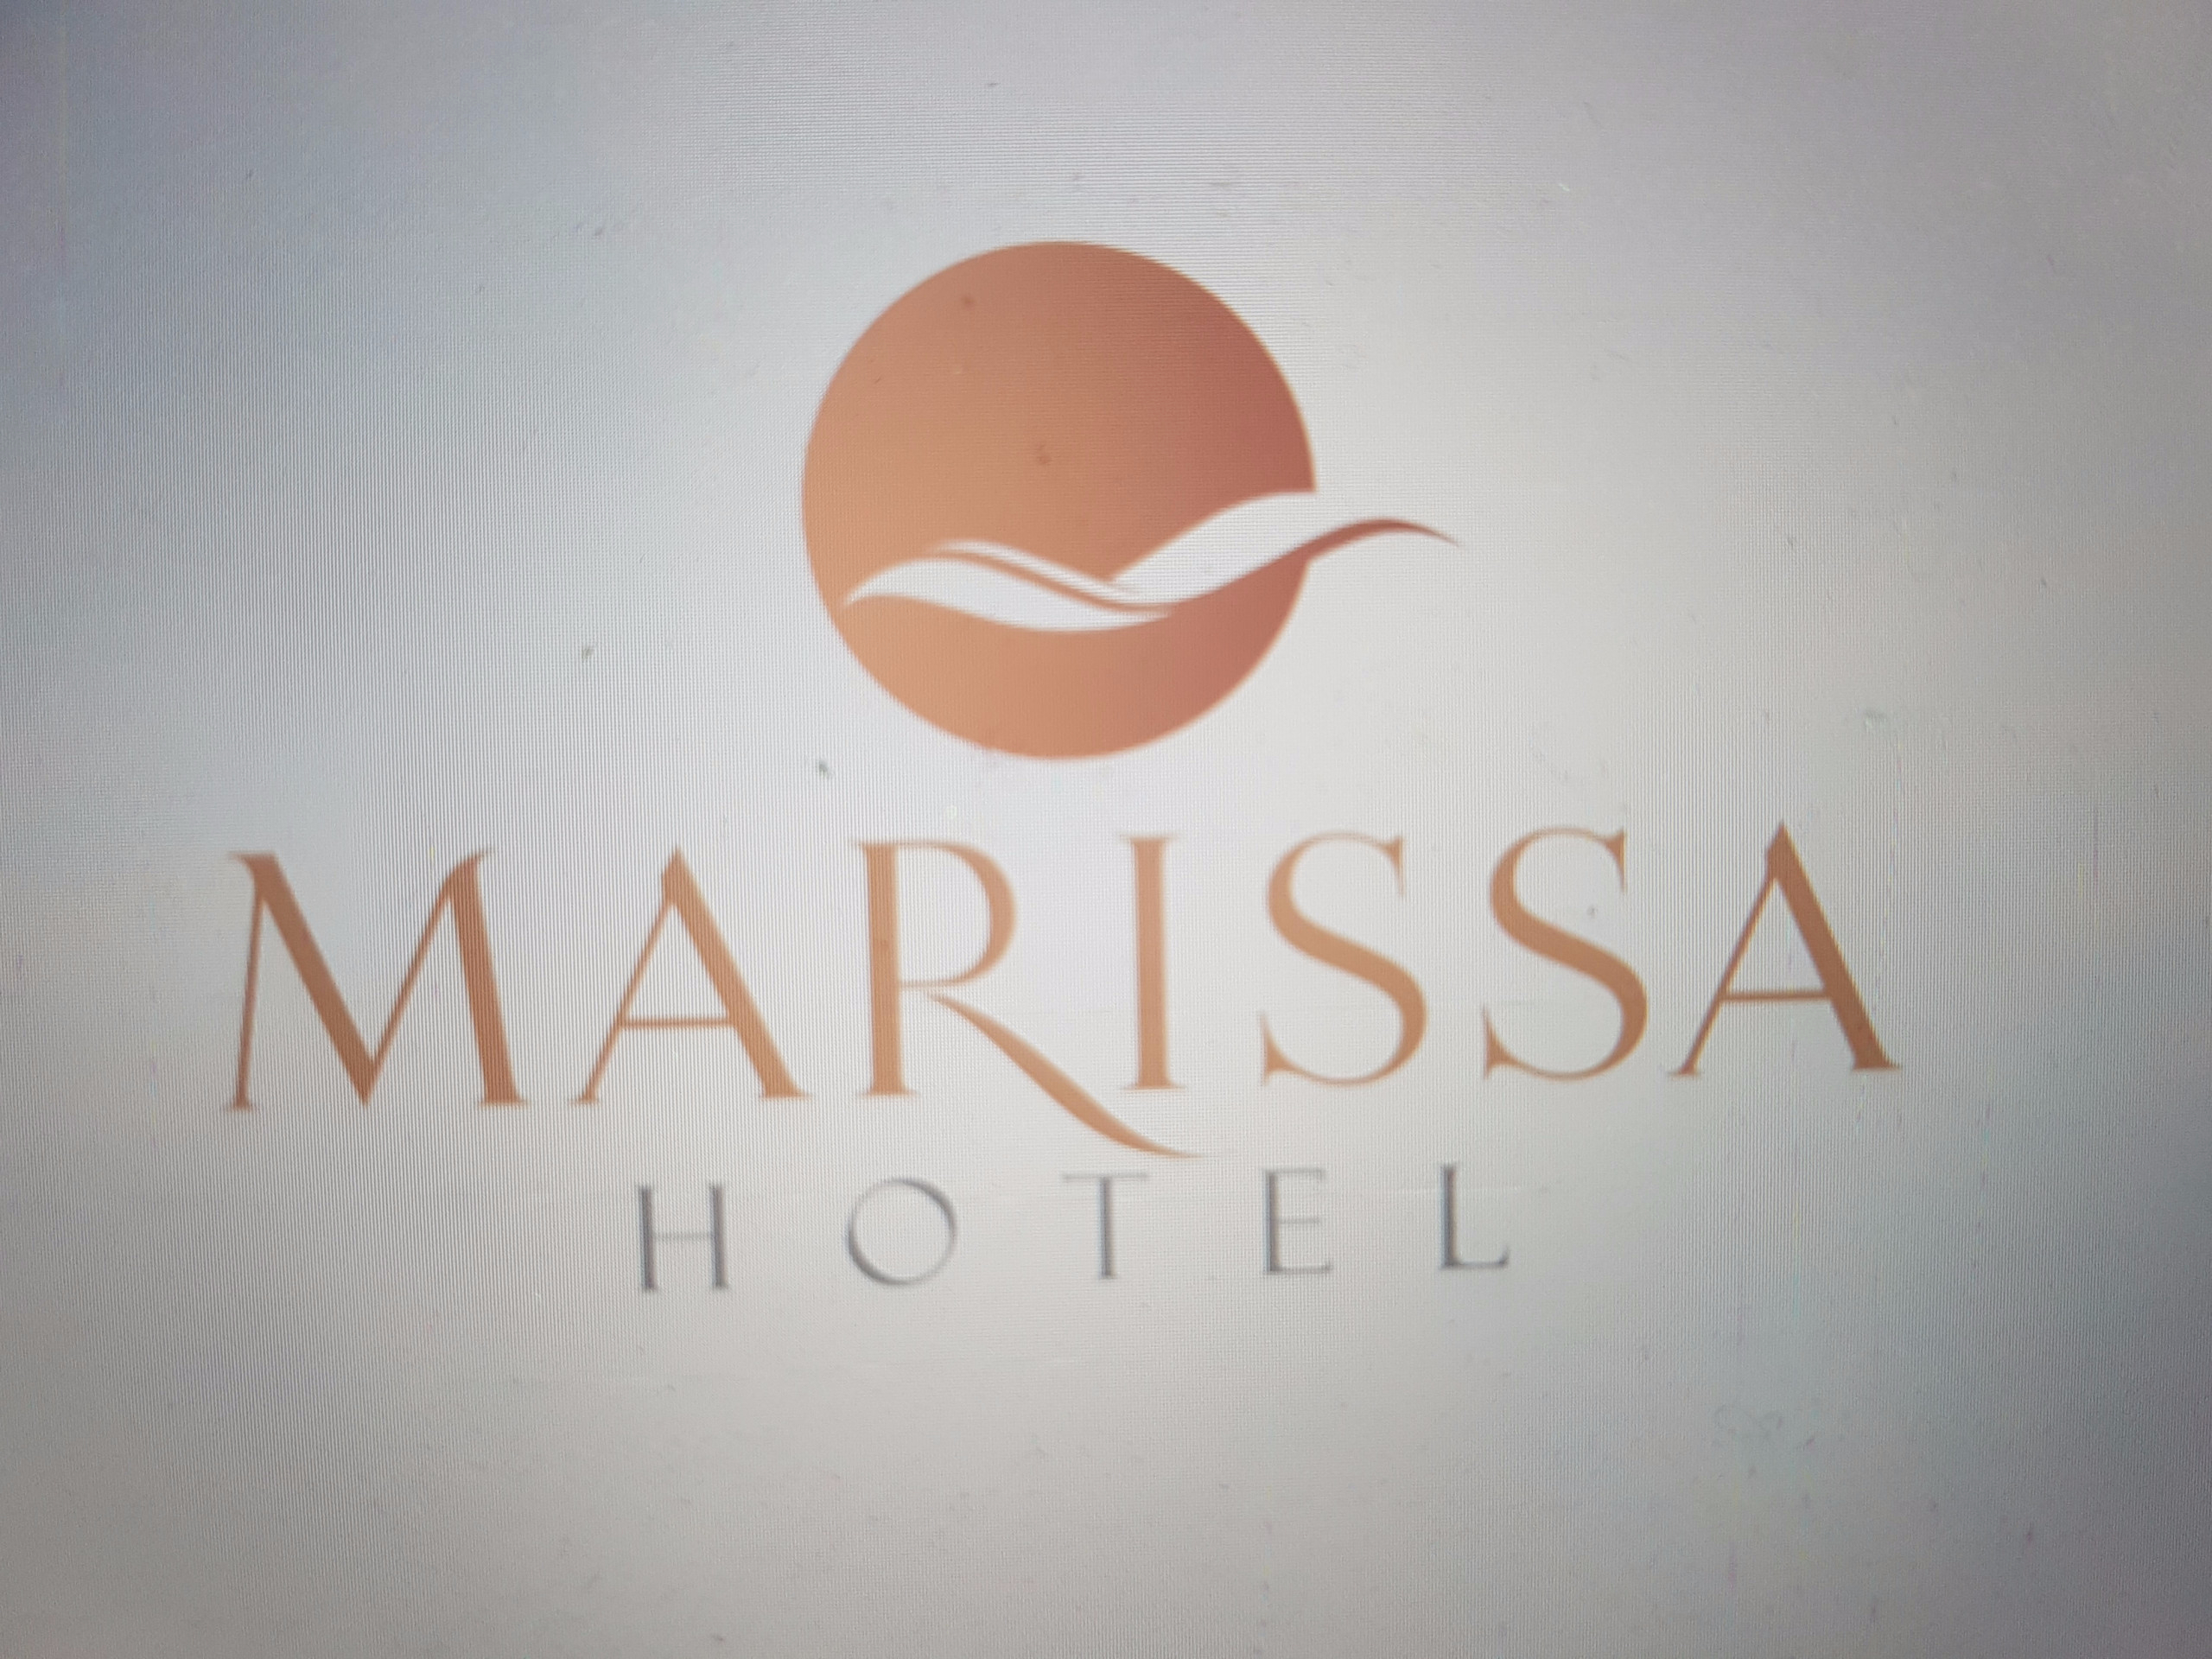 Marissa Hải Tiến Hotel & Spa (sắp khai trương)